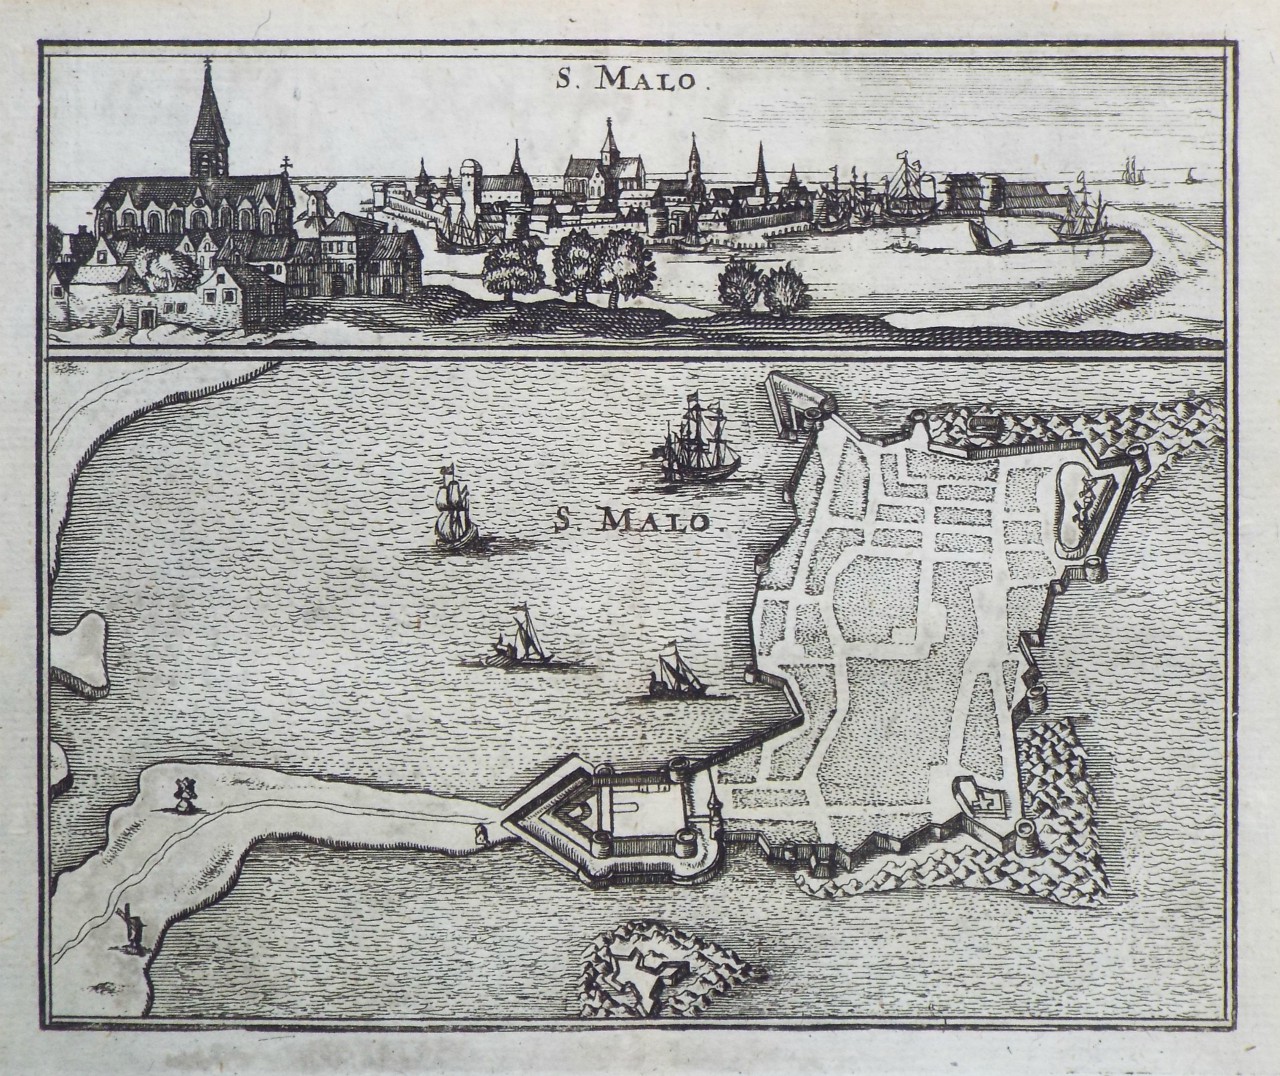 Map of Saint-Malo - Saint-Malo